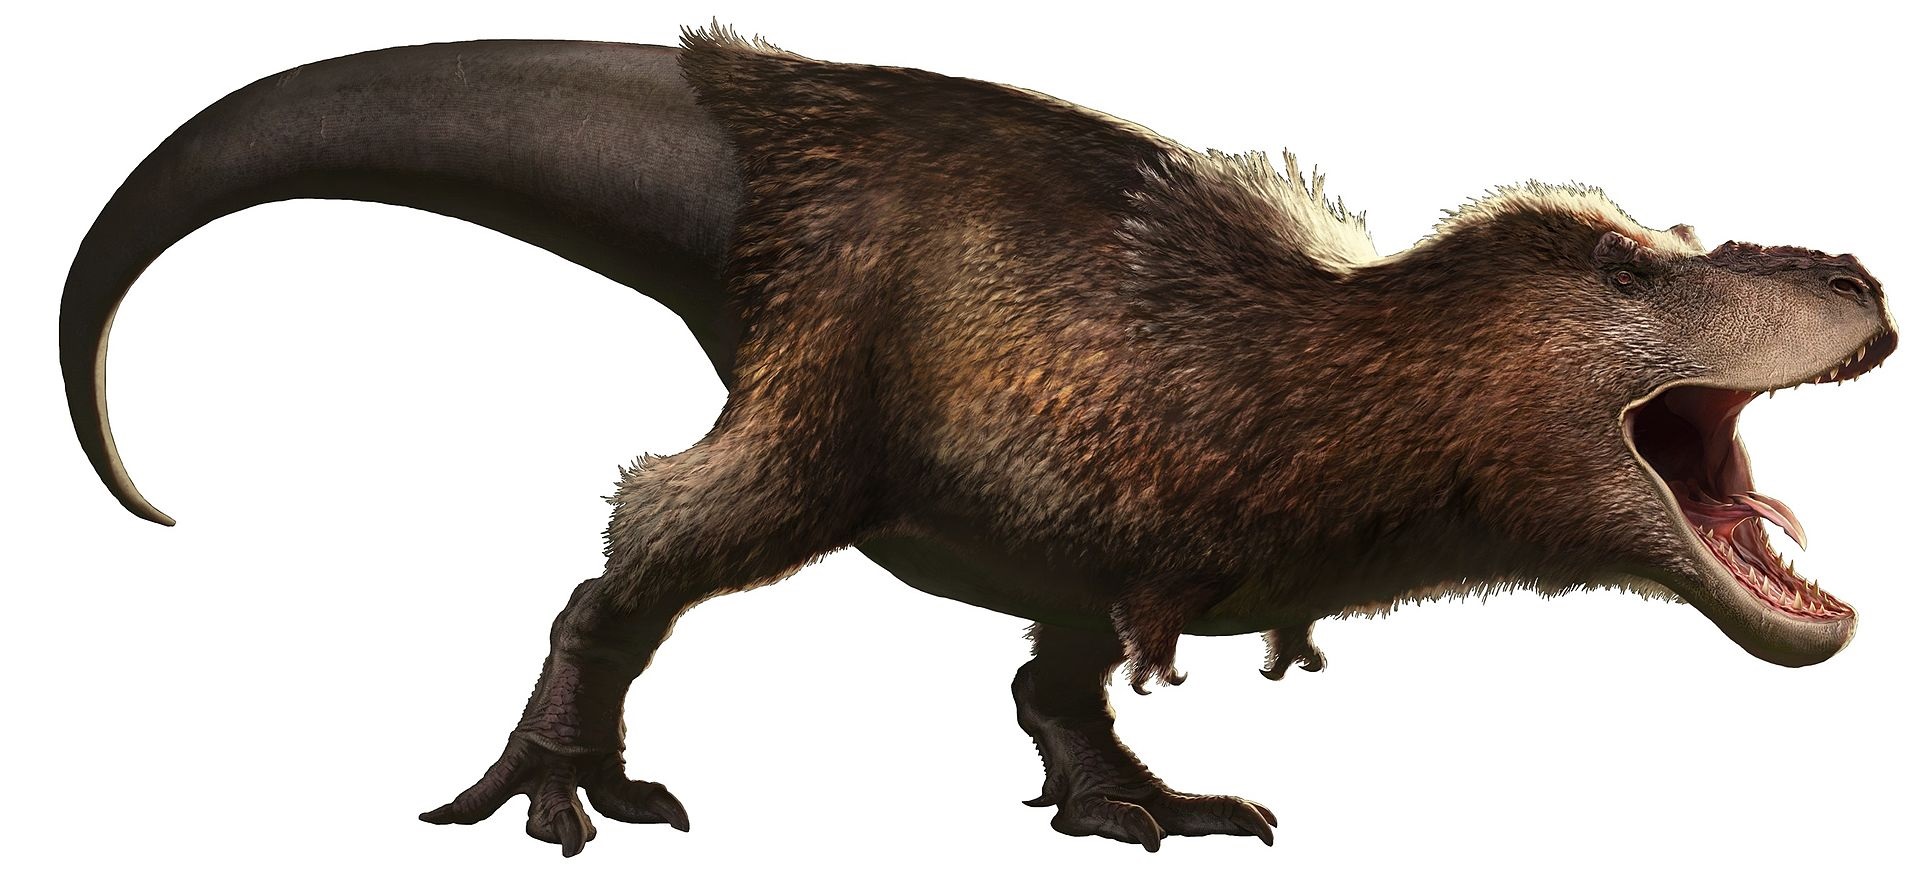 Hypotetická podoba dospělého jedince druhu Tyrannosaurus rex s výrazným pernatým pokryvem těla. Nevíme, zda takto mohl vypadat i jedinec „E. D. Cope“, pokud však skutečně vážil 10,6 tuny, jednalo by se nepochybně o největšího dosud známého suchozemsk